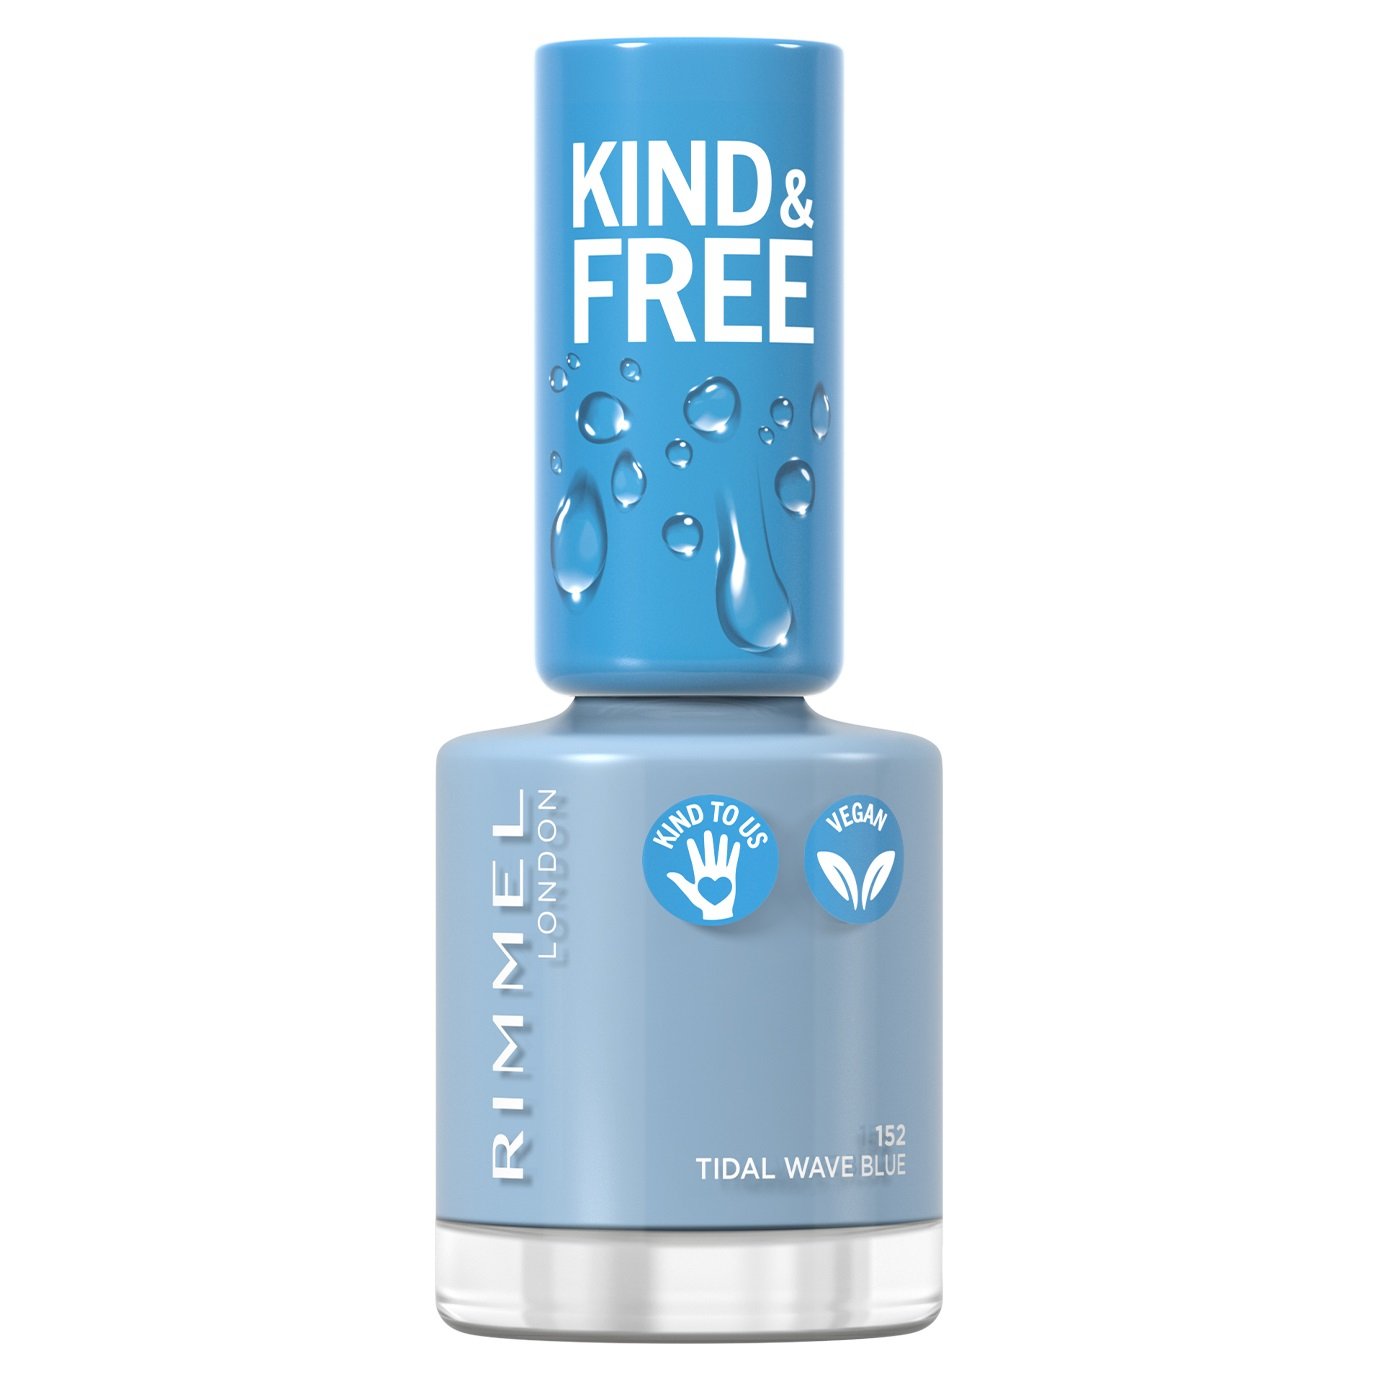 Лак для нігтів Rimmel Kind&Free, відтінок 152 (Tidal Wave Blue), 8 мл (8000019959396) - фото 1